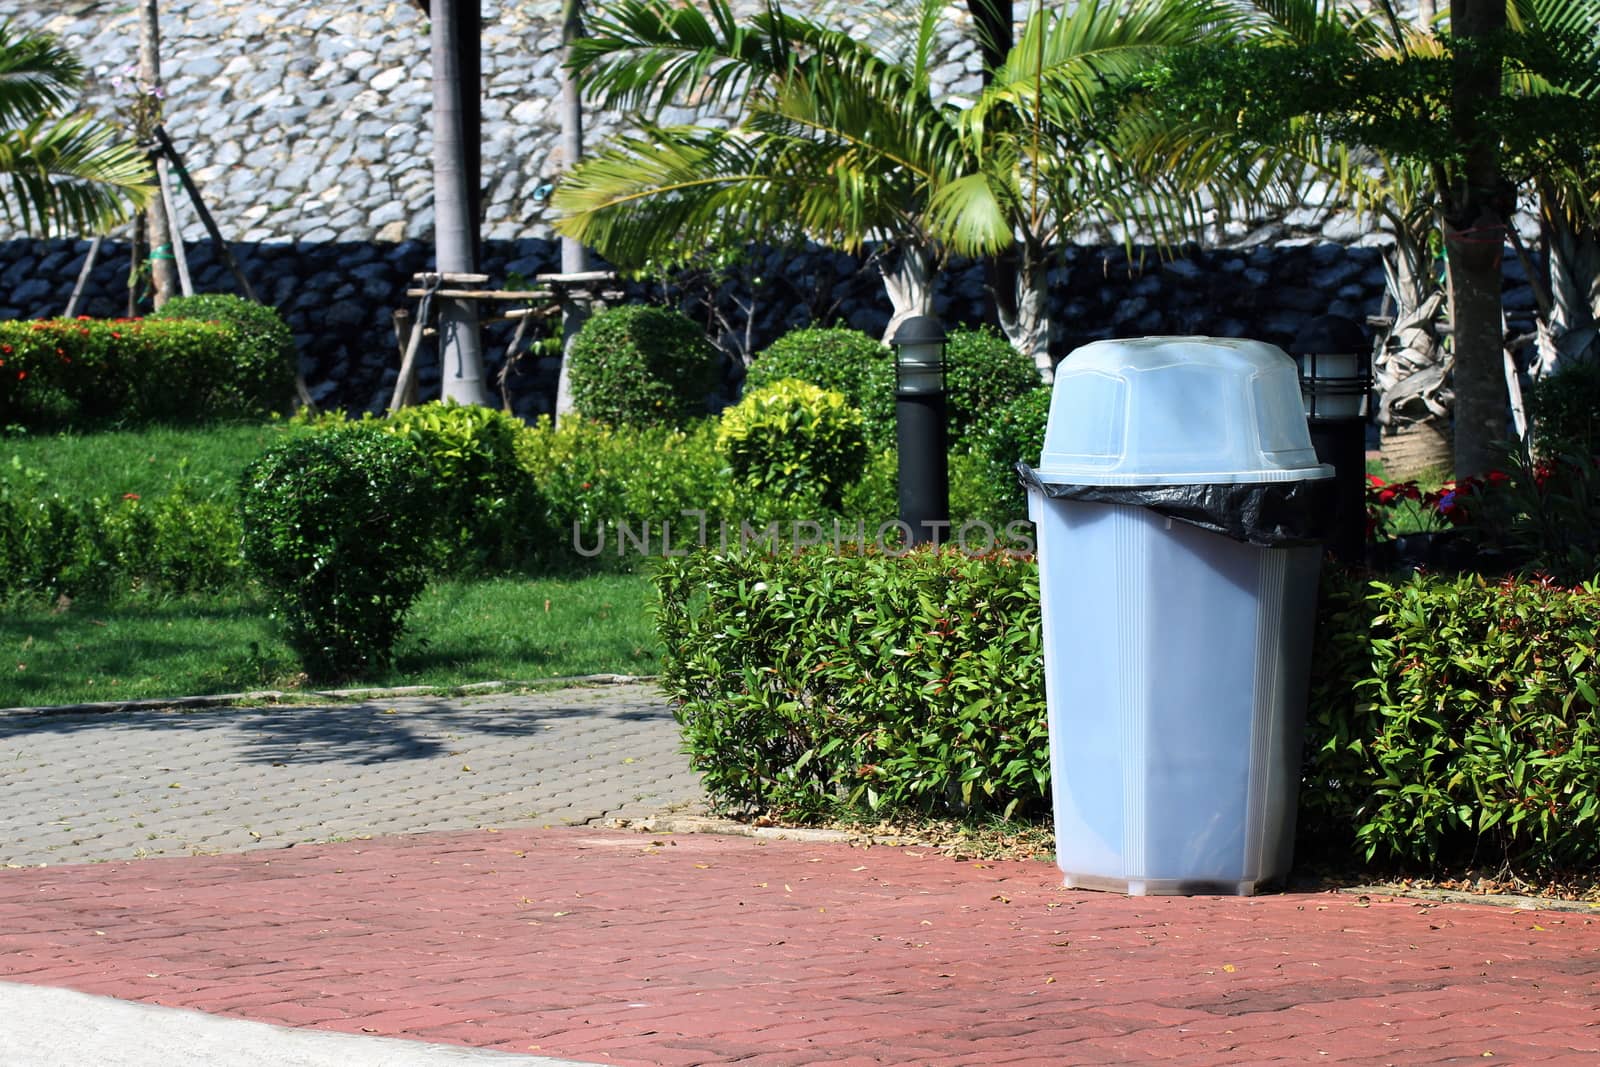 bin, plastic waste bin clear trash sideways walk at garden public, waste plastic garbage bin on floor garden by cgdeaw